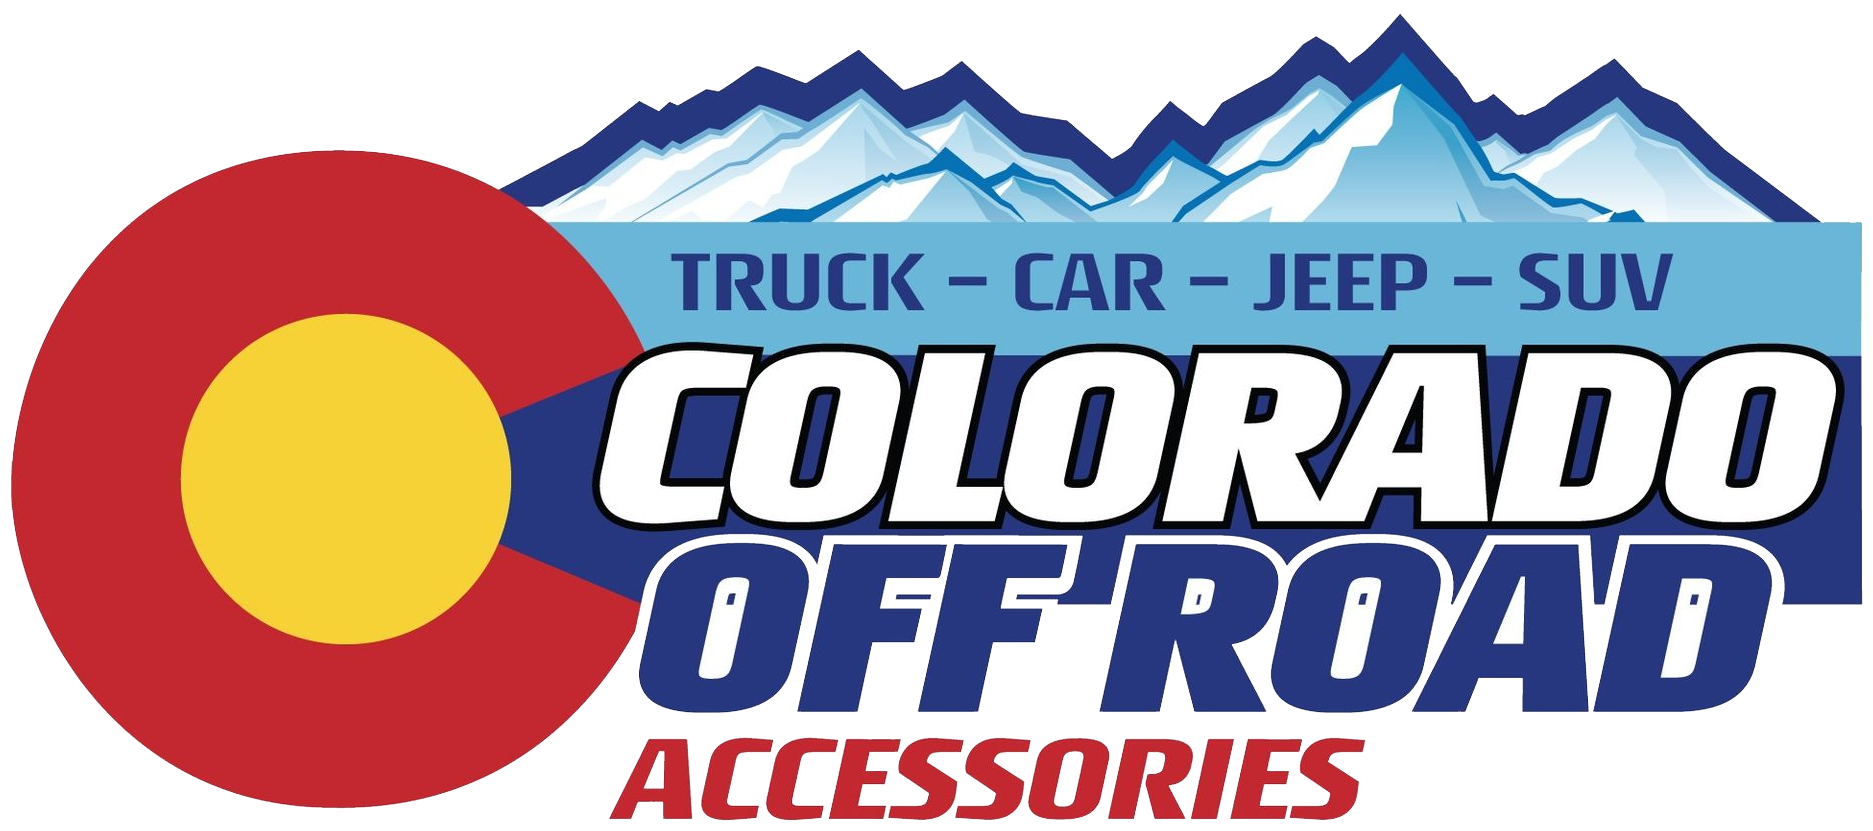 Colorado Off Road Logo